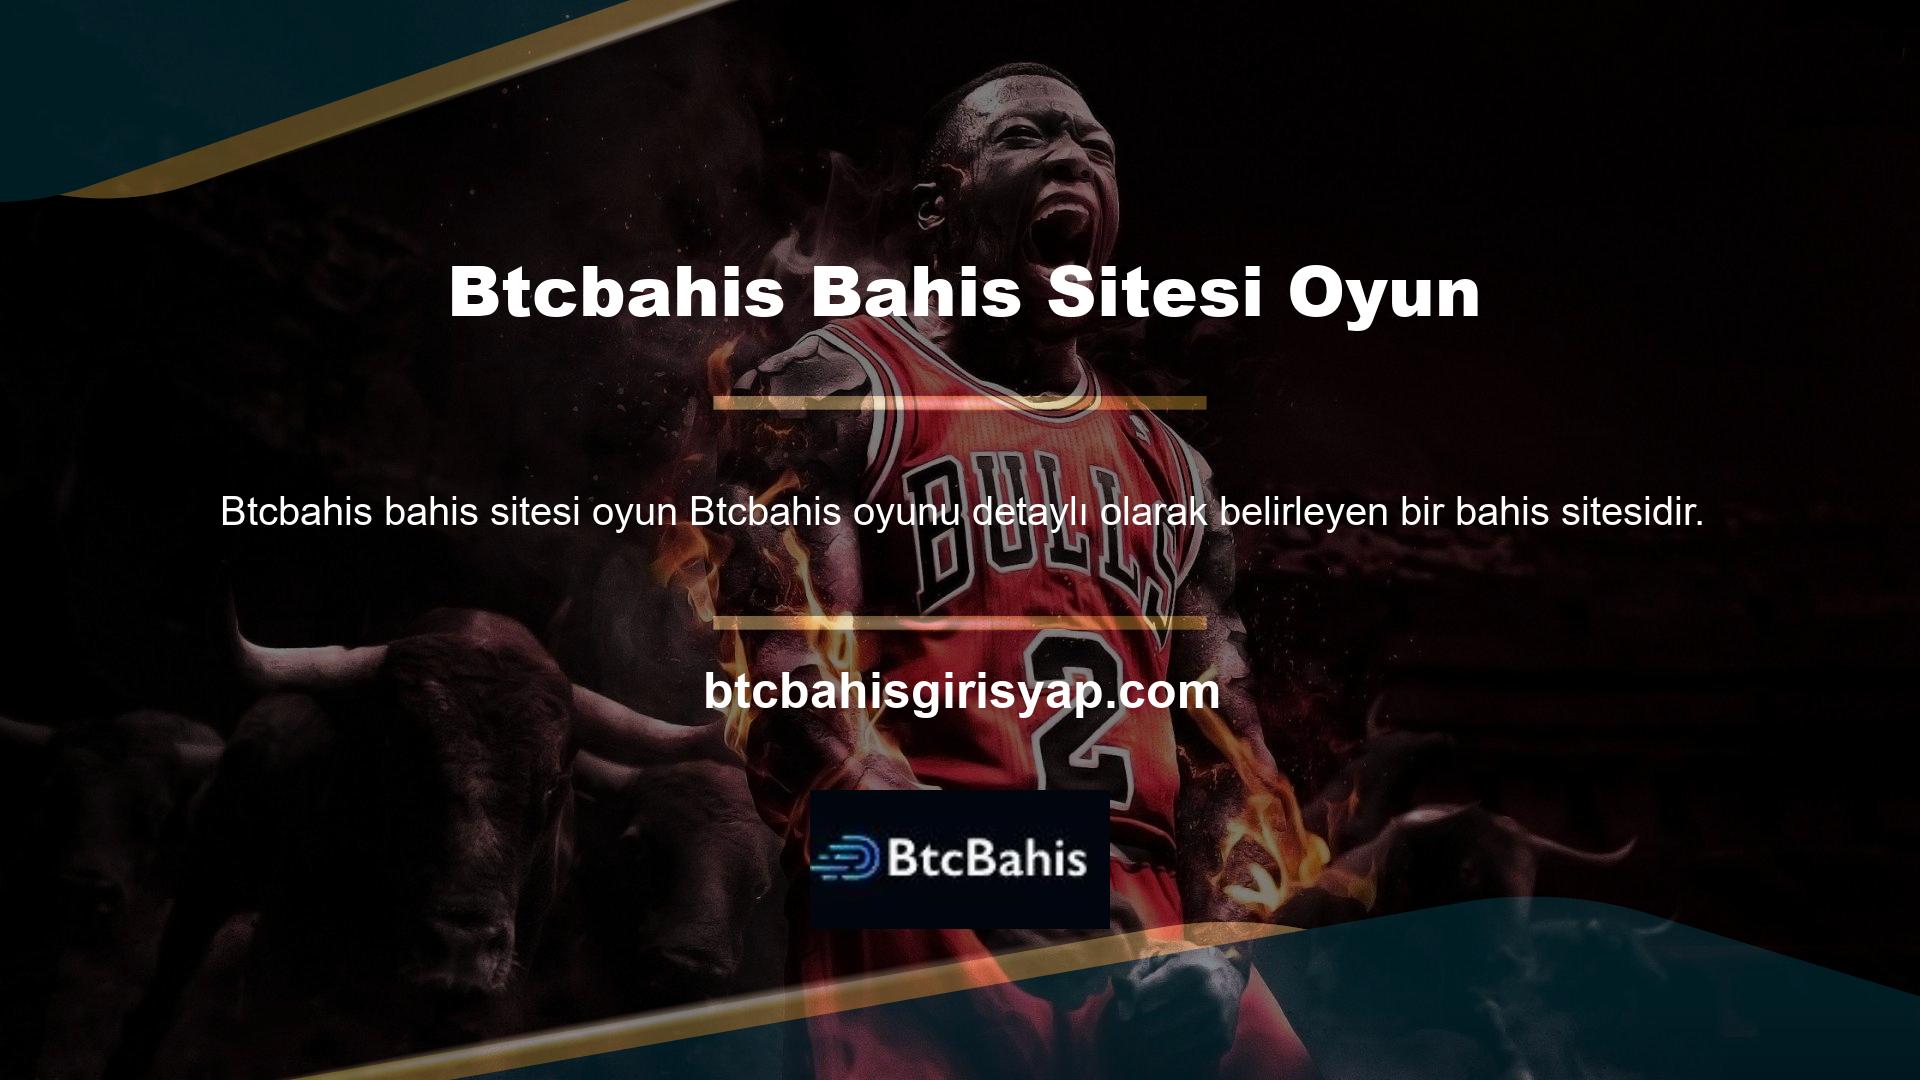 Btcbahis sitesi diğer sitelere göre daha detaylı olduğundan oyun tutkunları arasında oldukça popülerdir